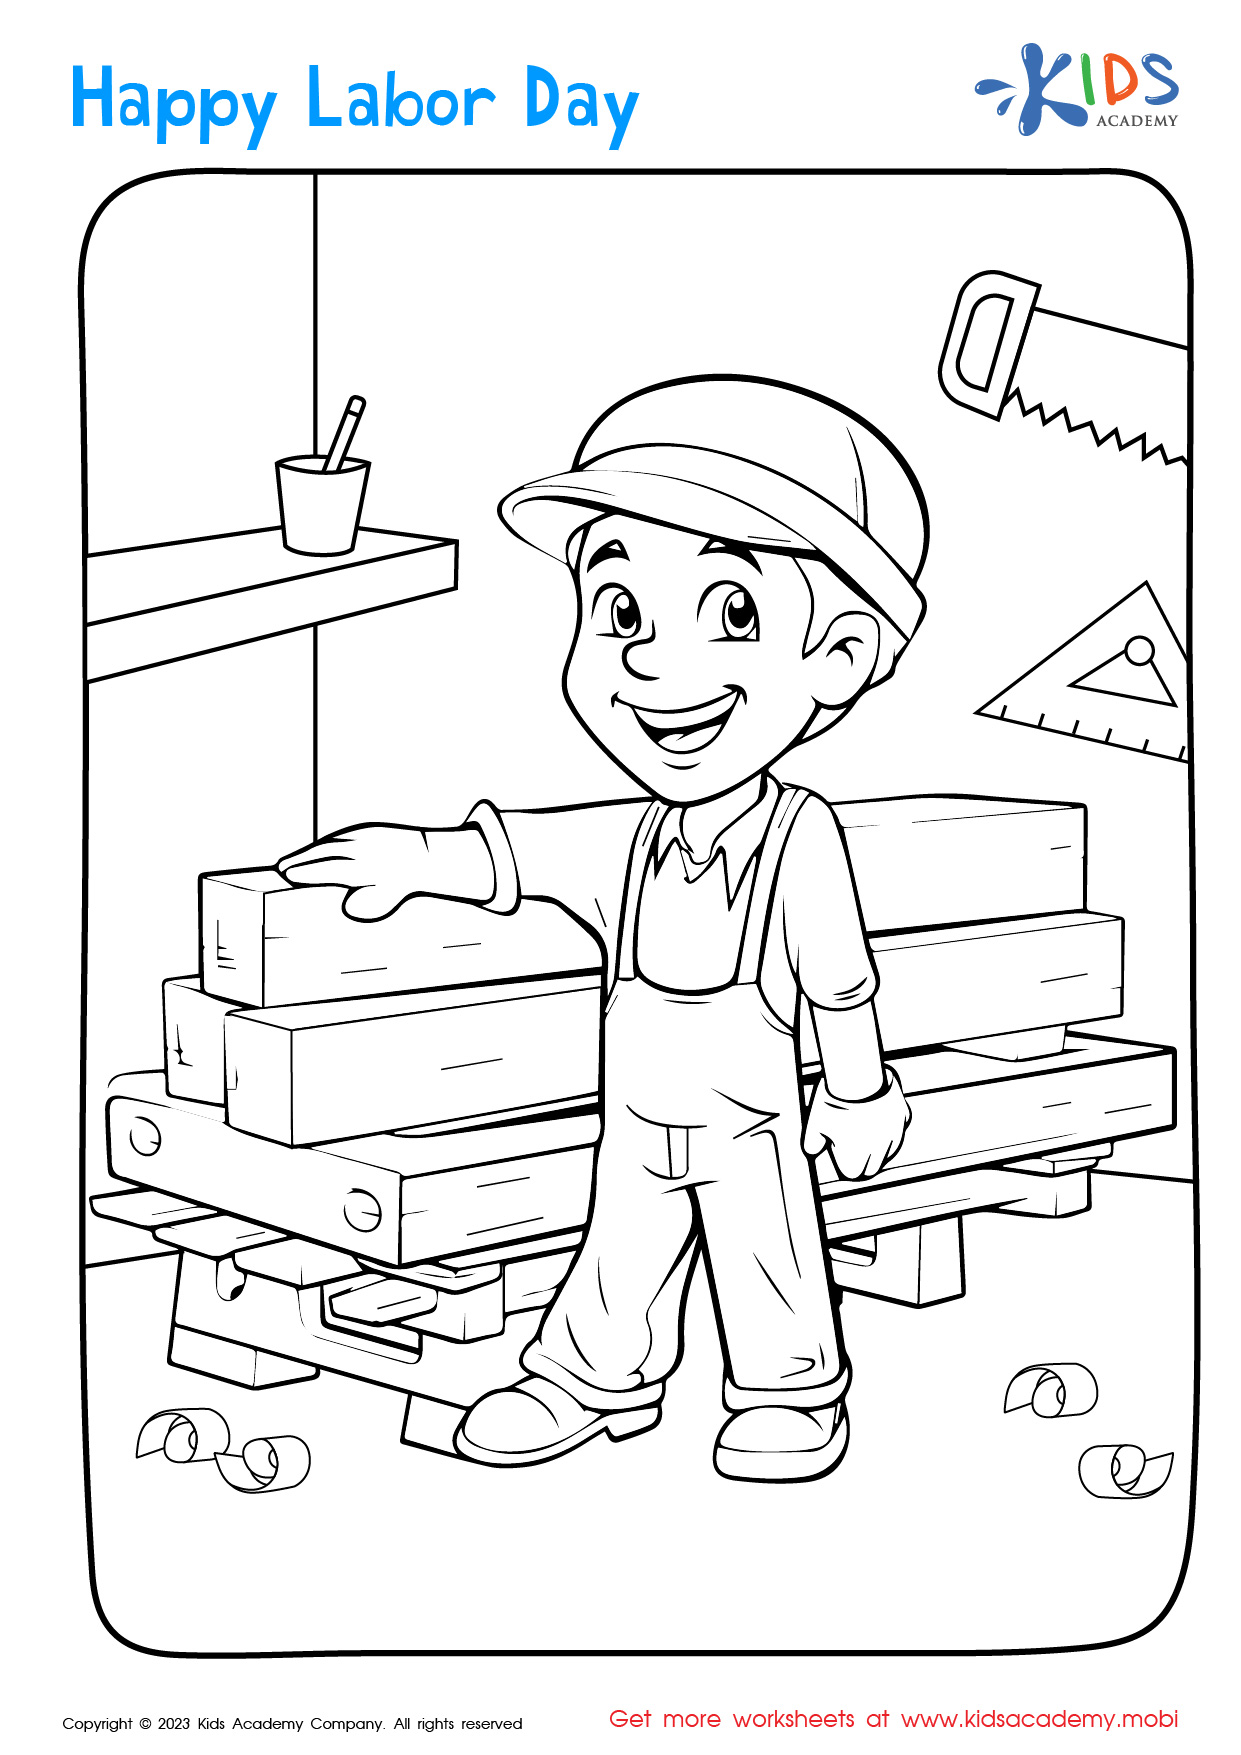 Labor Day: Carpenter